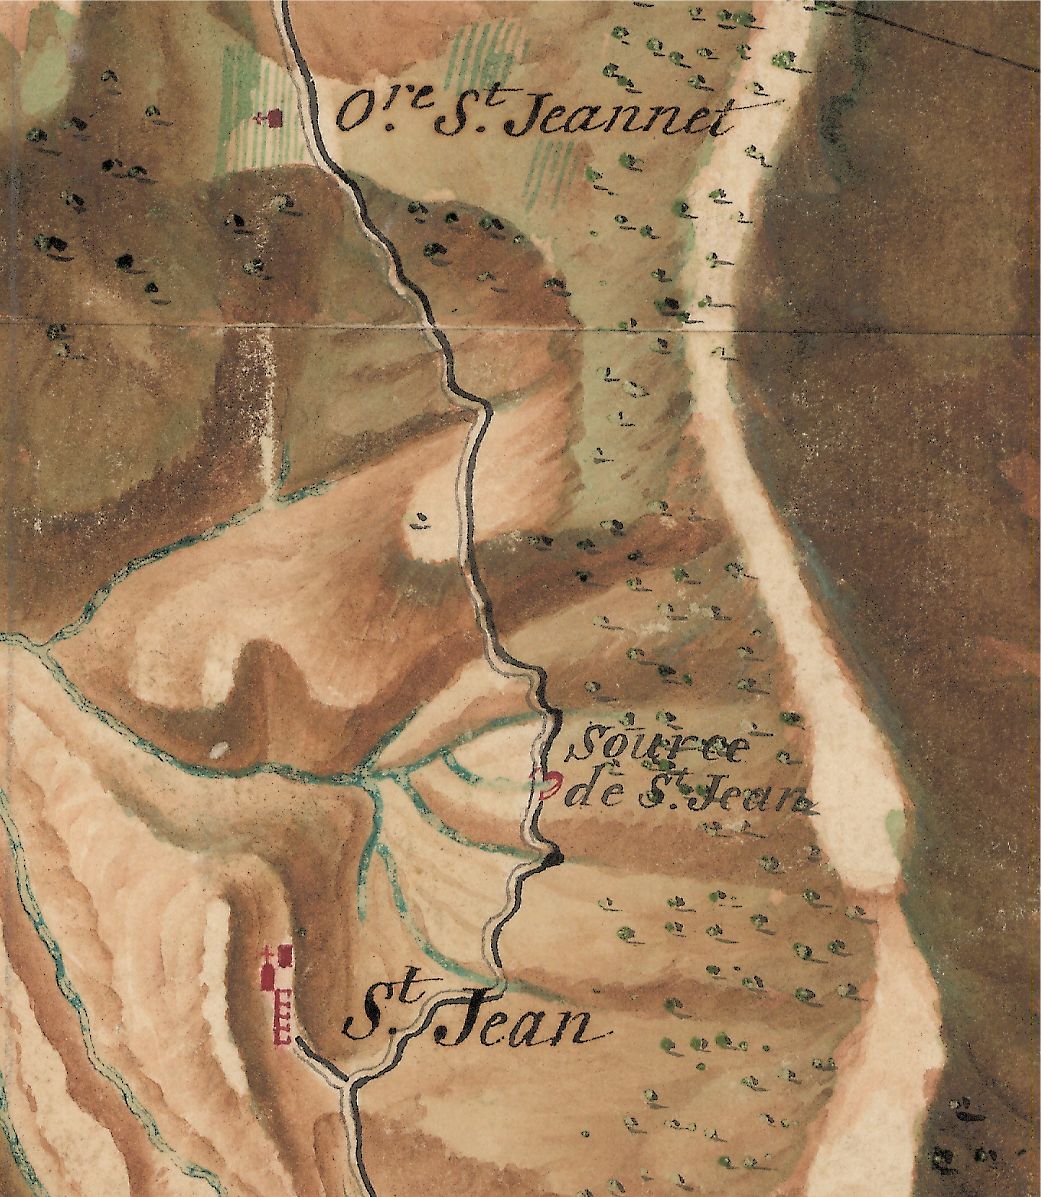 Cartes des frontières Est de la France, de Colmars à Marseille, 1764-1778. Détail de la planche 194-11 : St-Jean, source de St-jean et oratoire Saint-Jeannet.